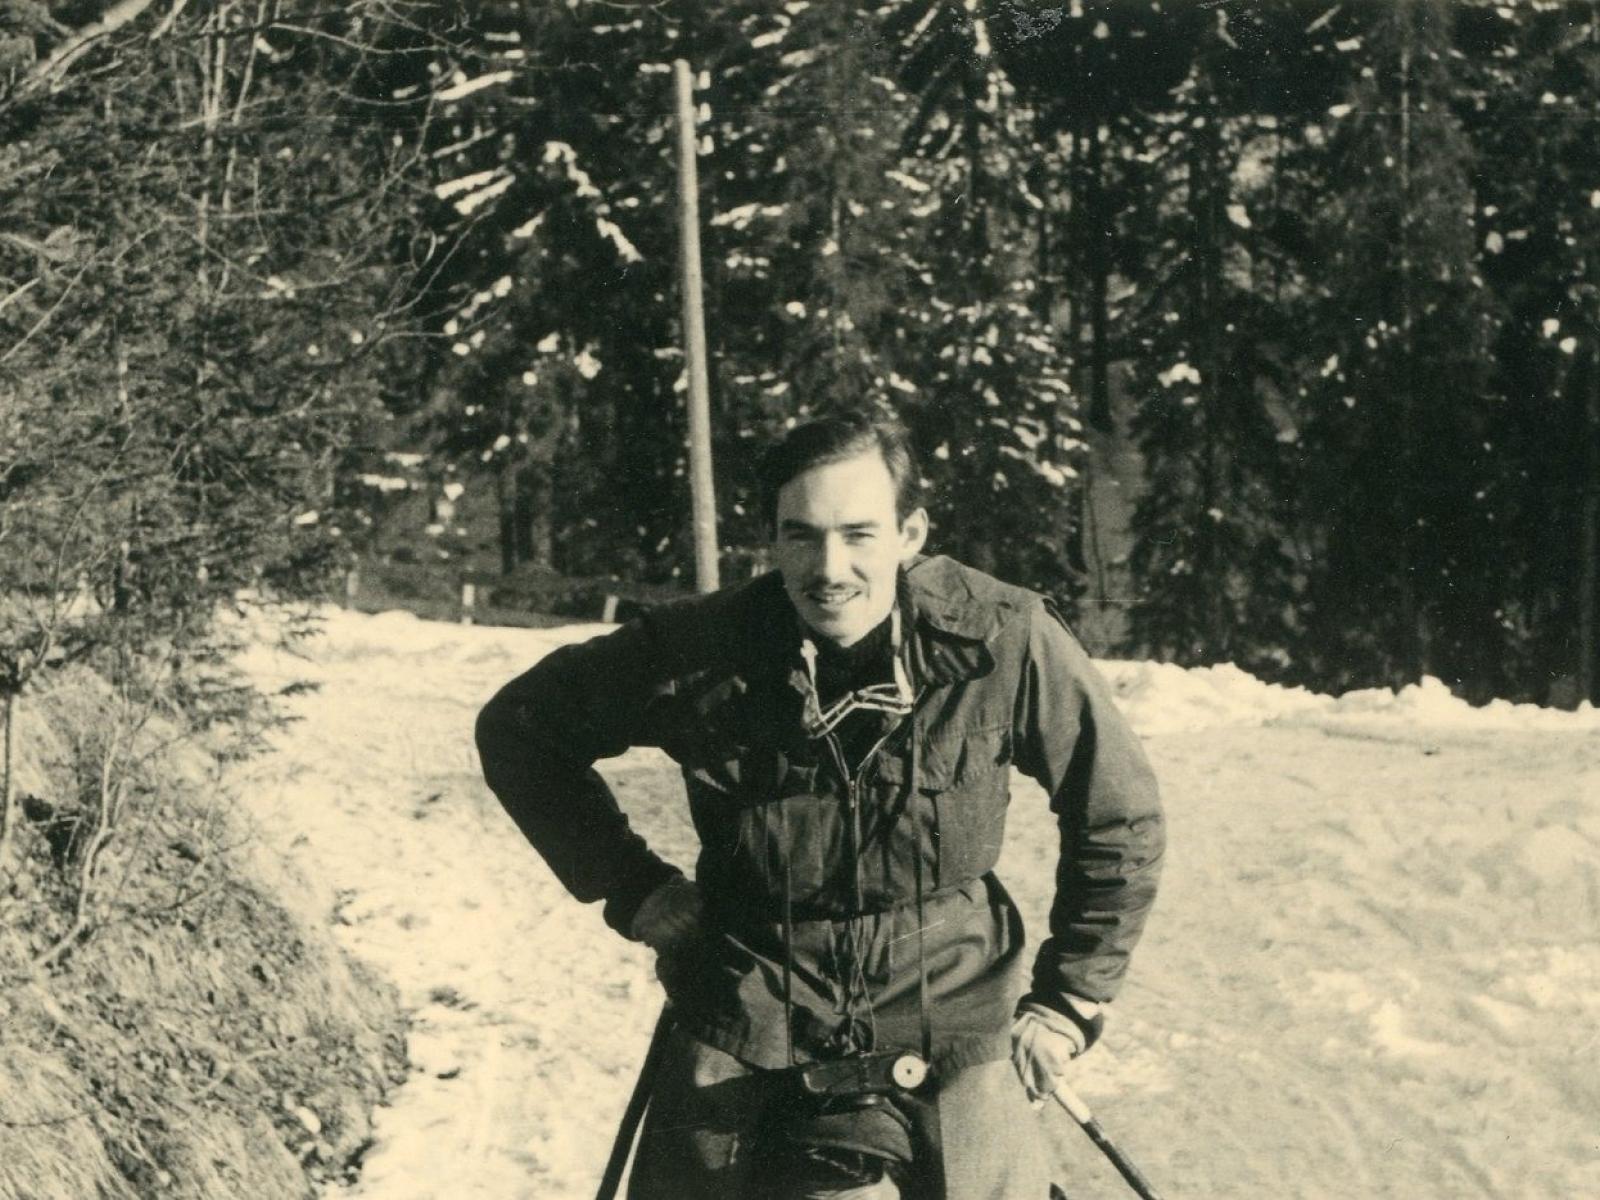 Vacances au ski en 1947